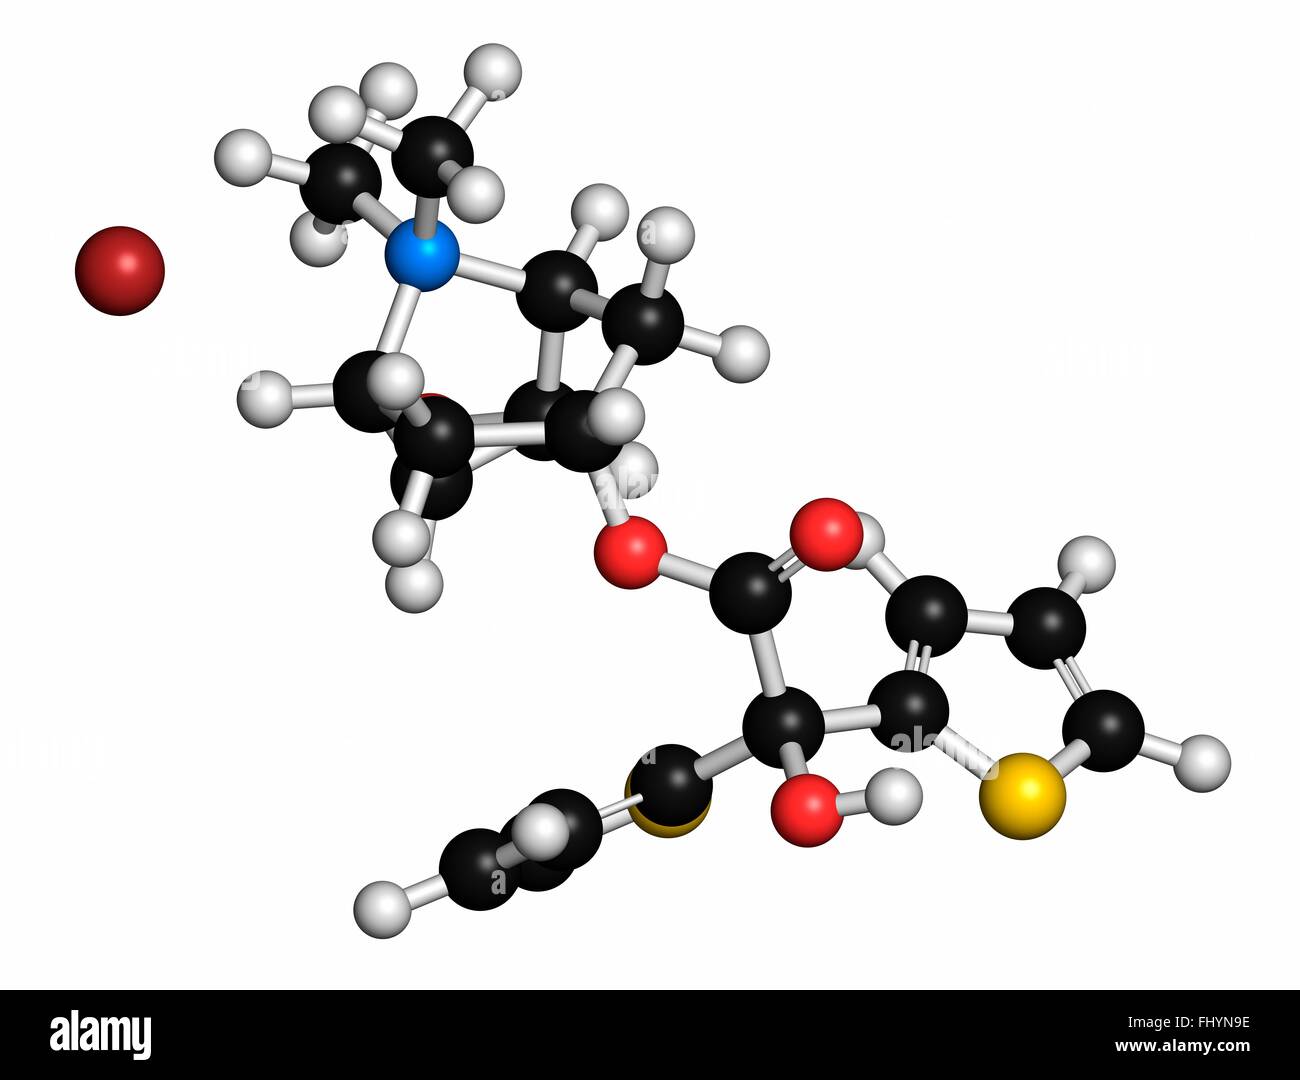 Bromure de tiotropium la bronchopneumopathie chronique obstructive (BPCO) molécule pharmaceutique Les atomes sont représentés comme des sphères et sont en couleur Banque D'Images